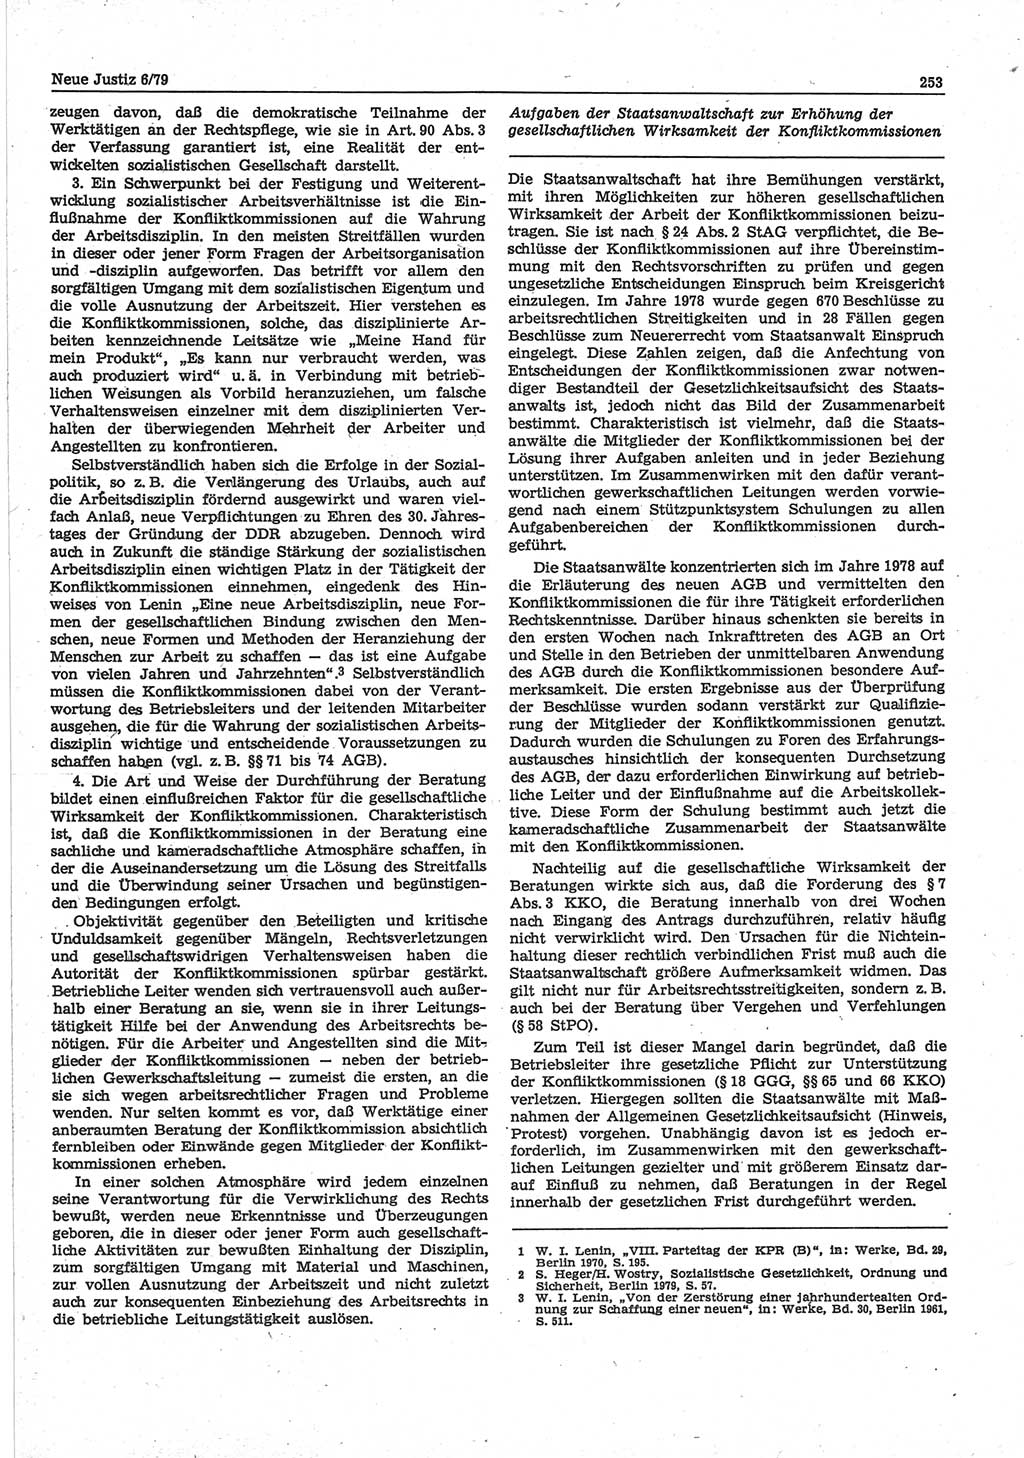 Neue Justiz (NJ), Zeitschrift für sozialistisches Recht und Gesetzlichkeit [Deutsche Demokratische Republik (DDR)], 33. Jahrgang 1979, Seite 253 (NJ DDR 1979, S. 253)